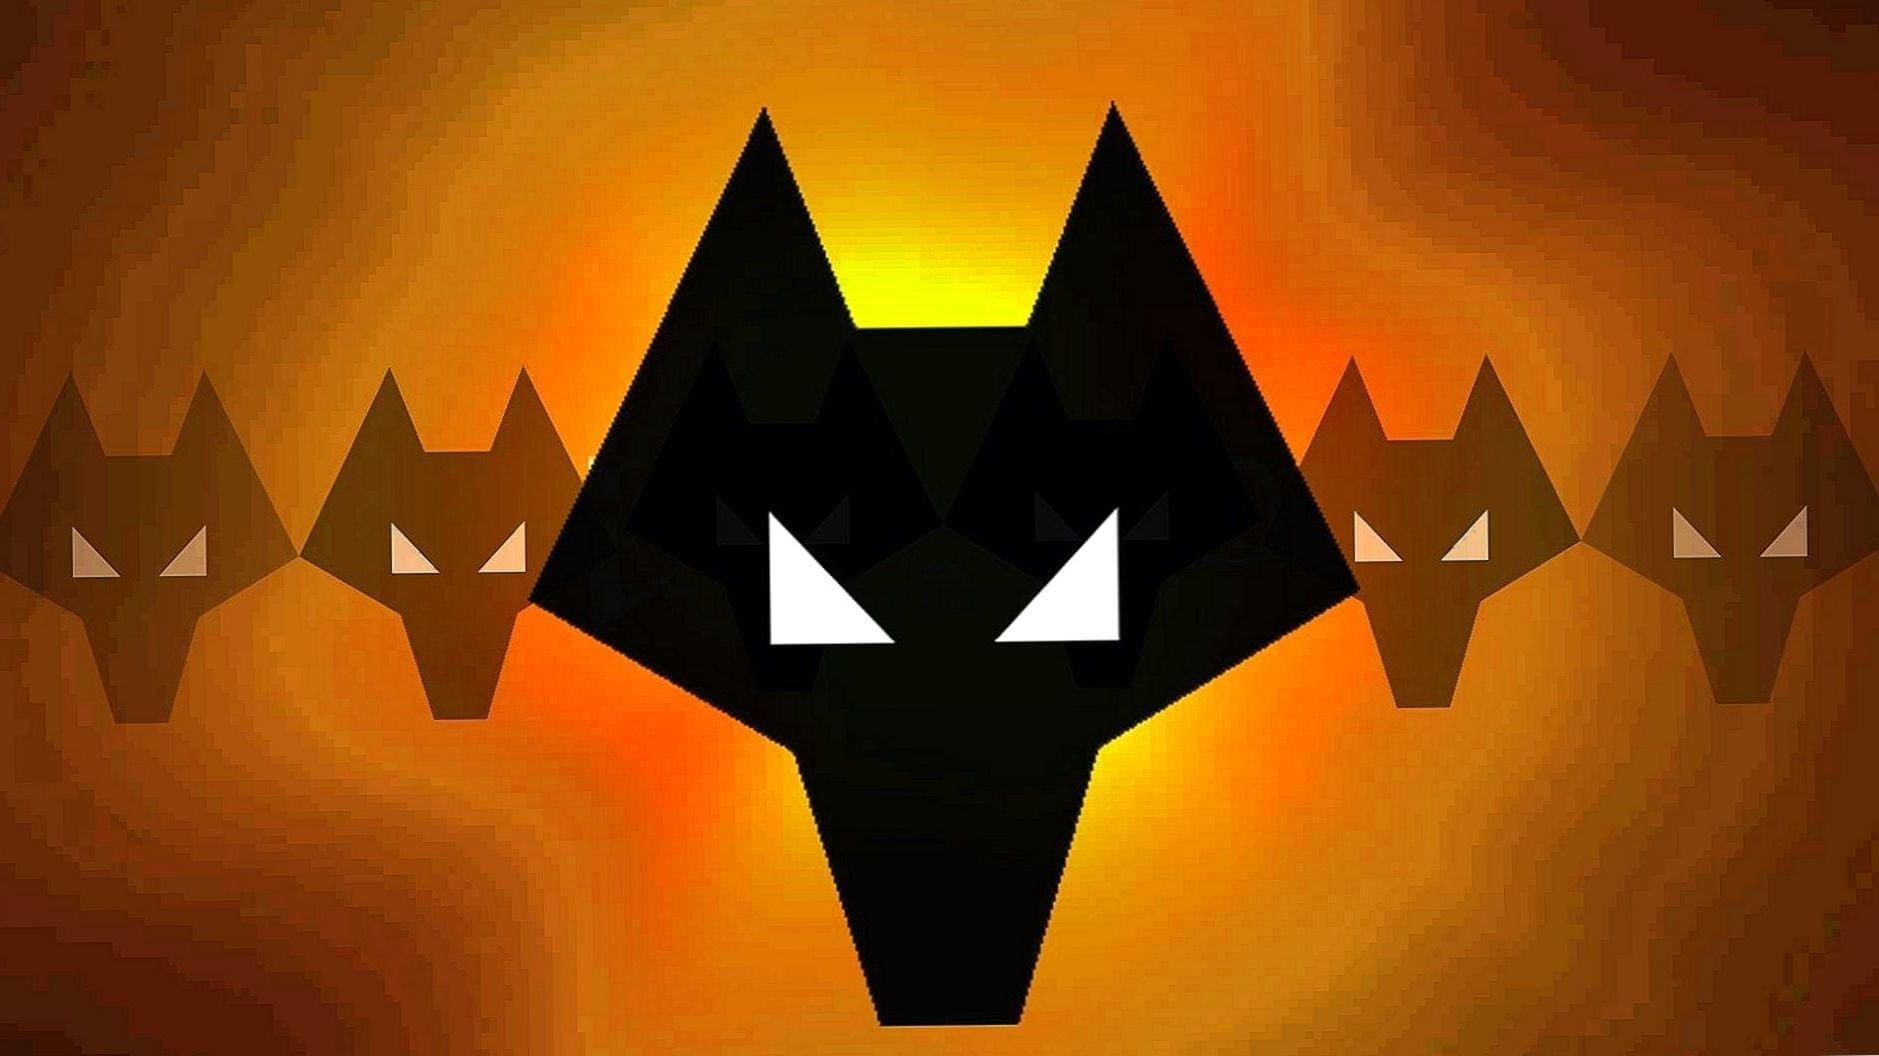 Wolves Fc Logo Wallpaper